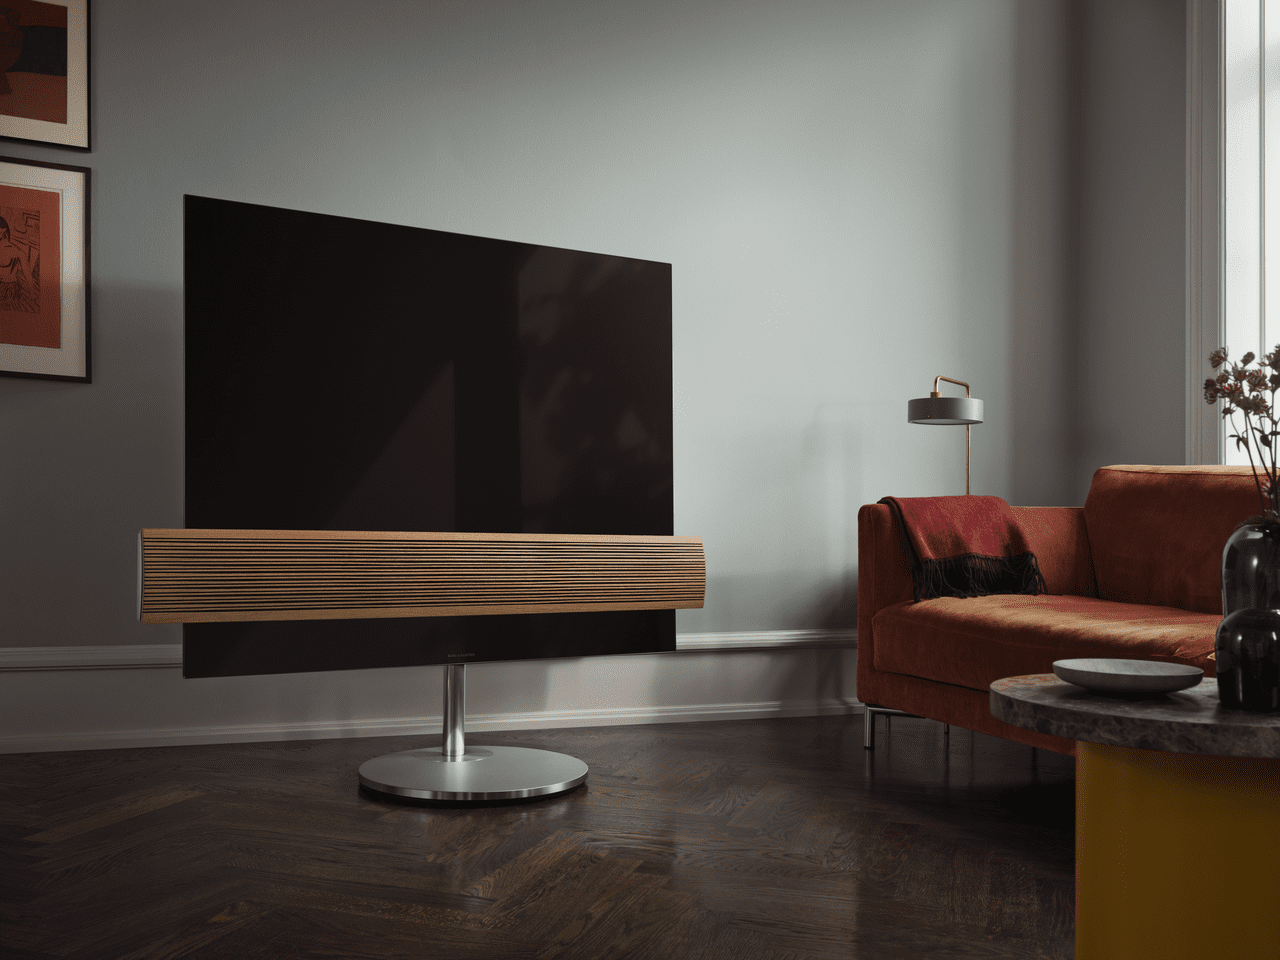 Nexus Herning BeoVision Eclipse et ægte OLED-TV i stuen